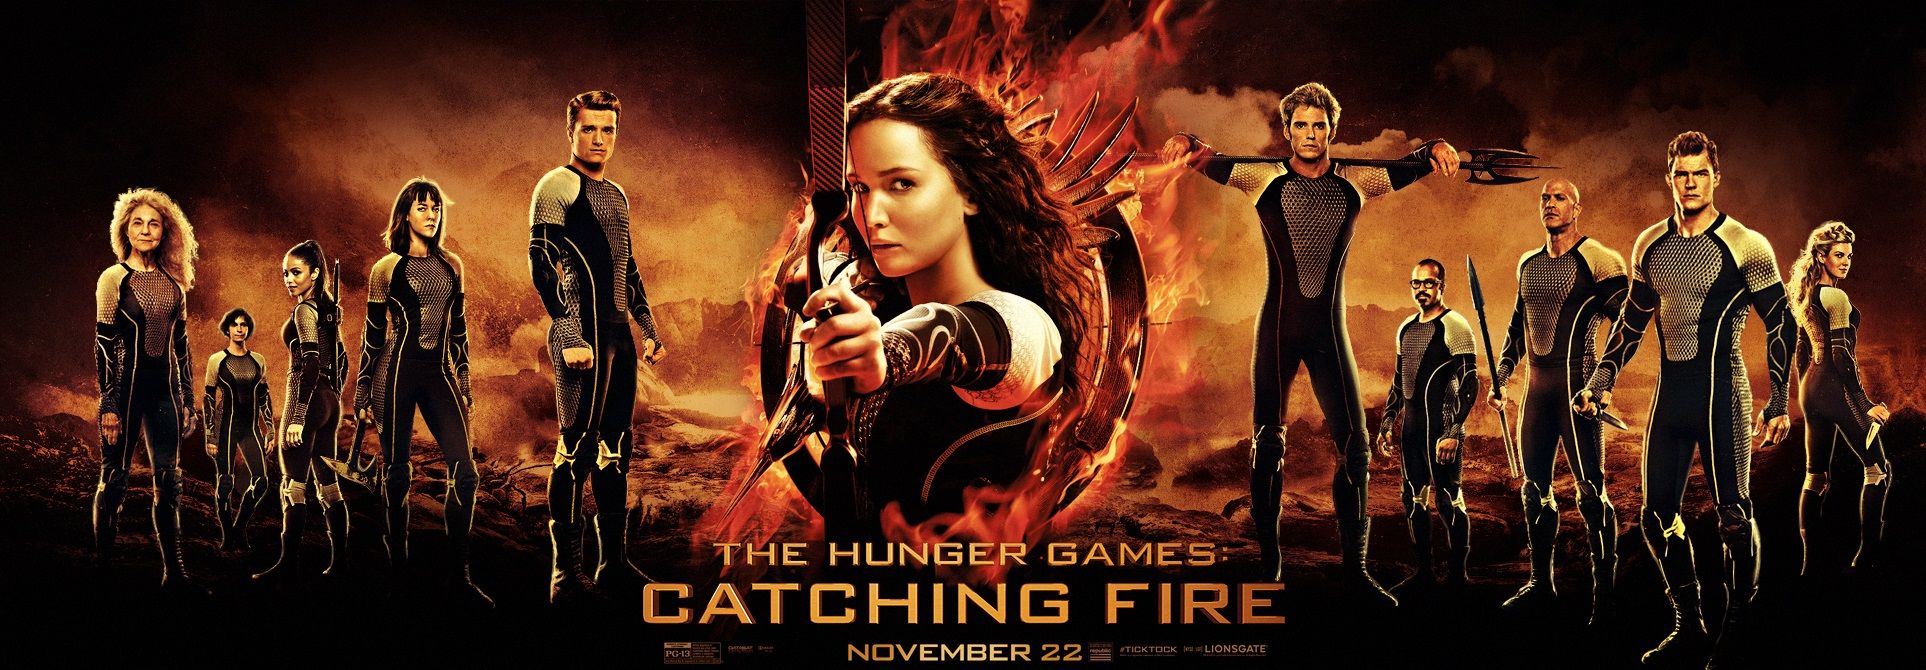 Hunger Games Cast Poster - HD Wallpaper 